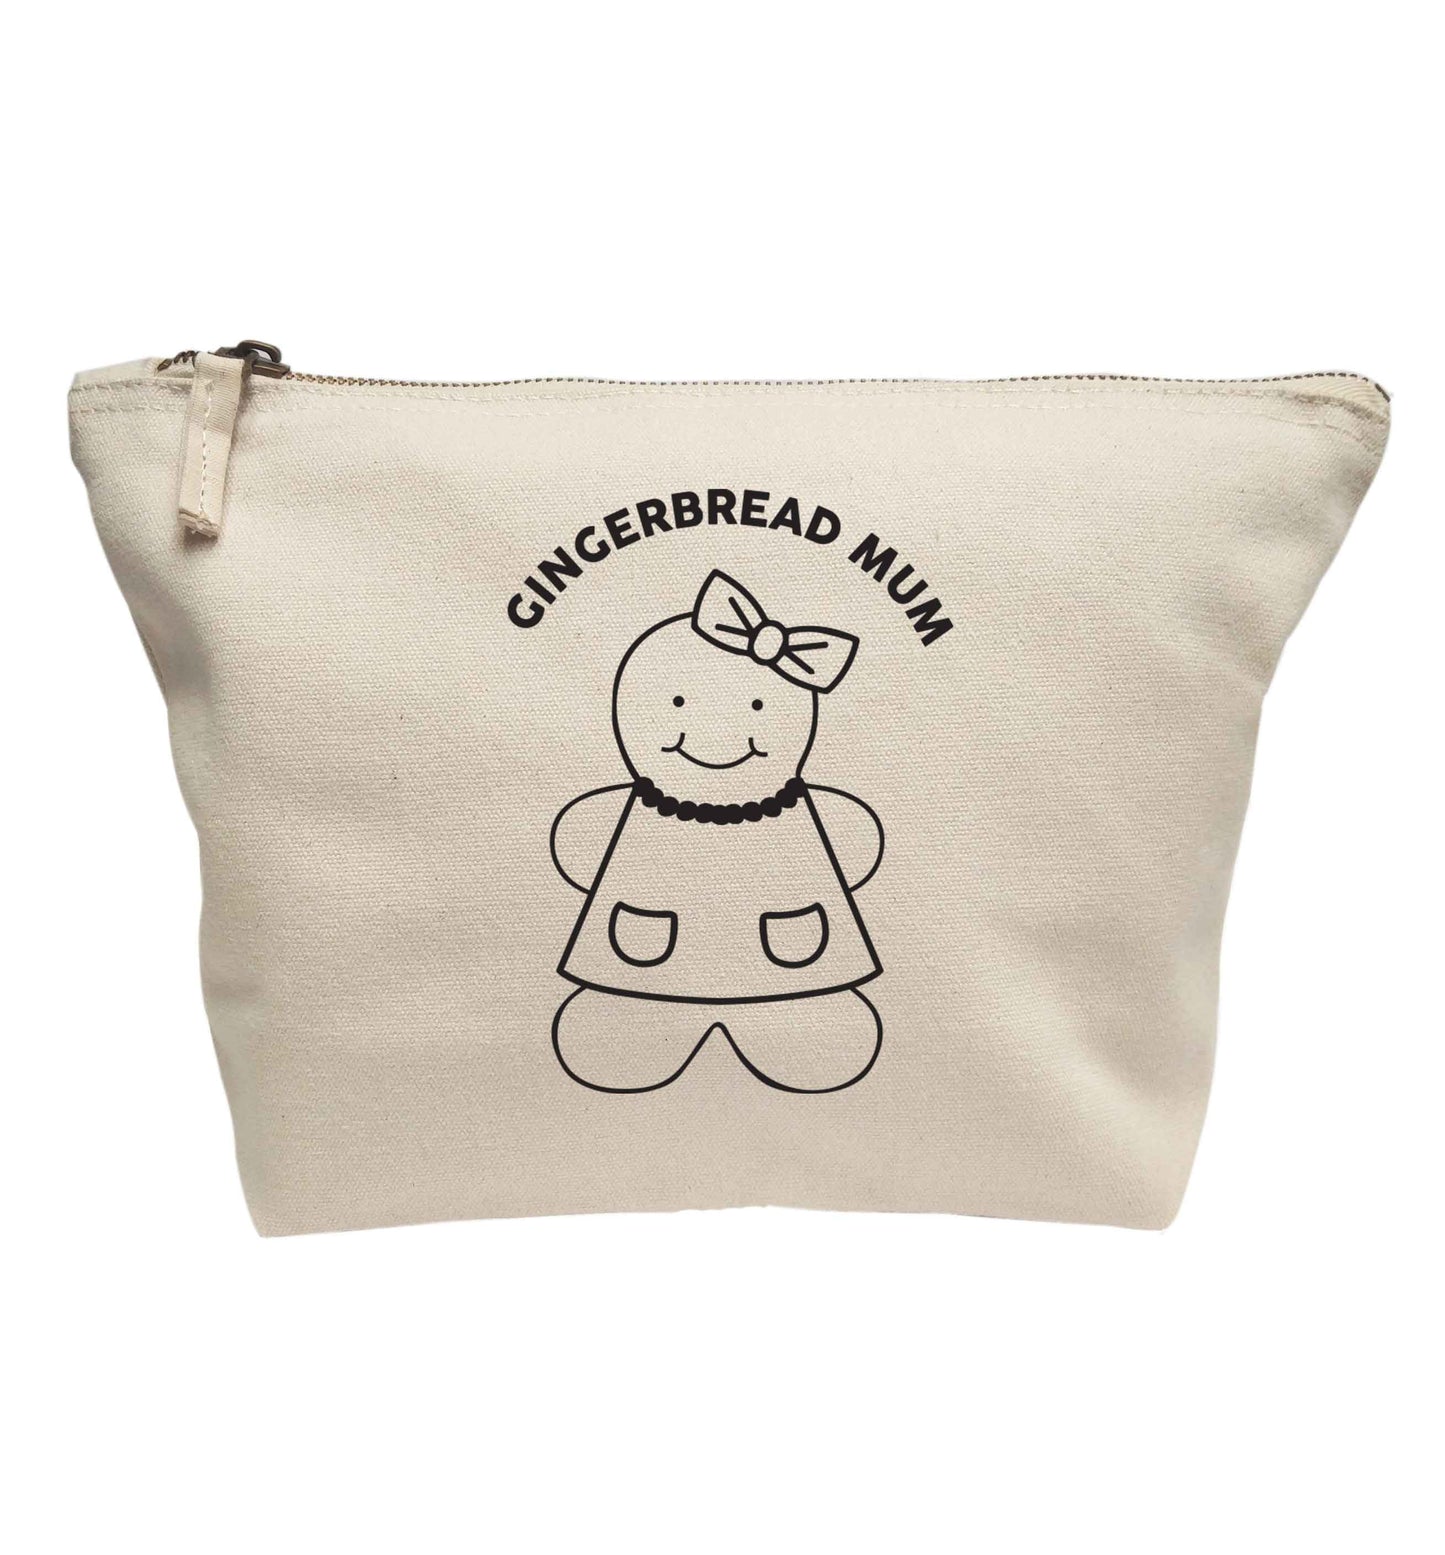 Gingerbread mum | Makeup / wash bag